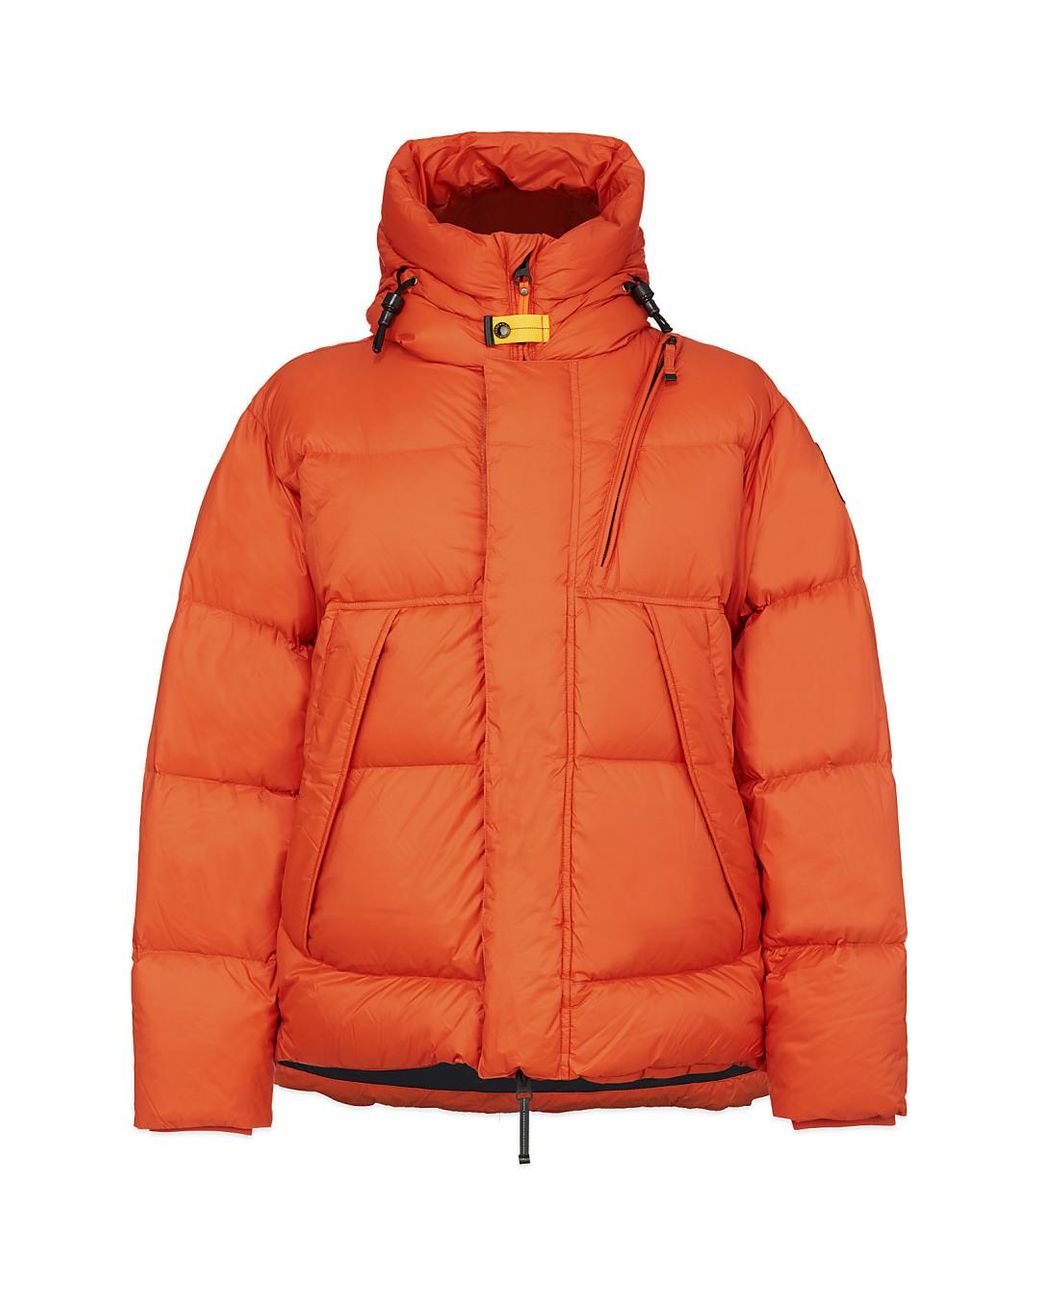 Parajumpers Fleece Cloud Puffer Jacket in Orange for Men - Lyst